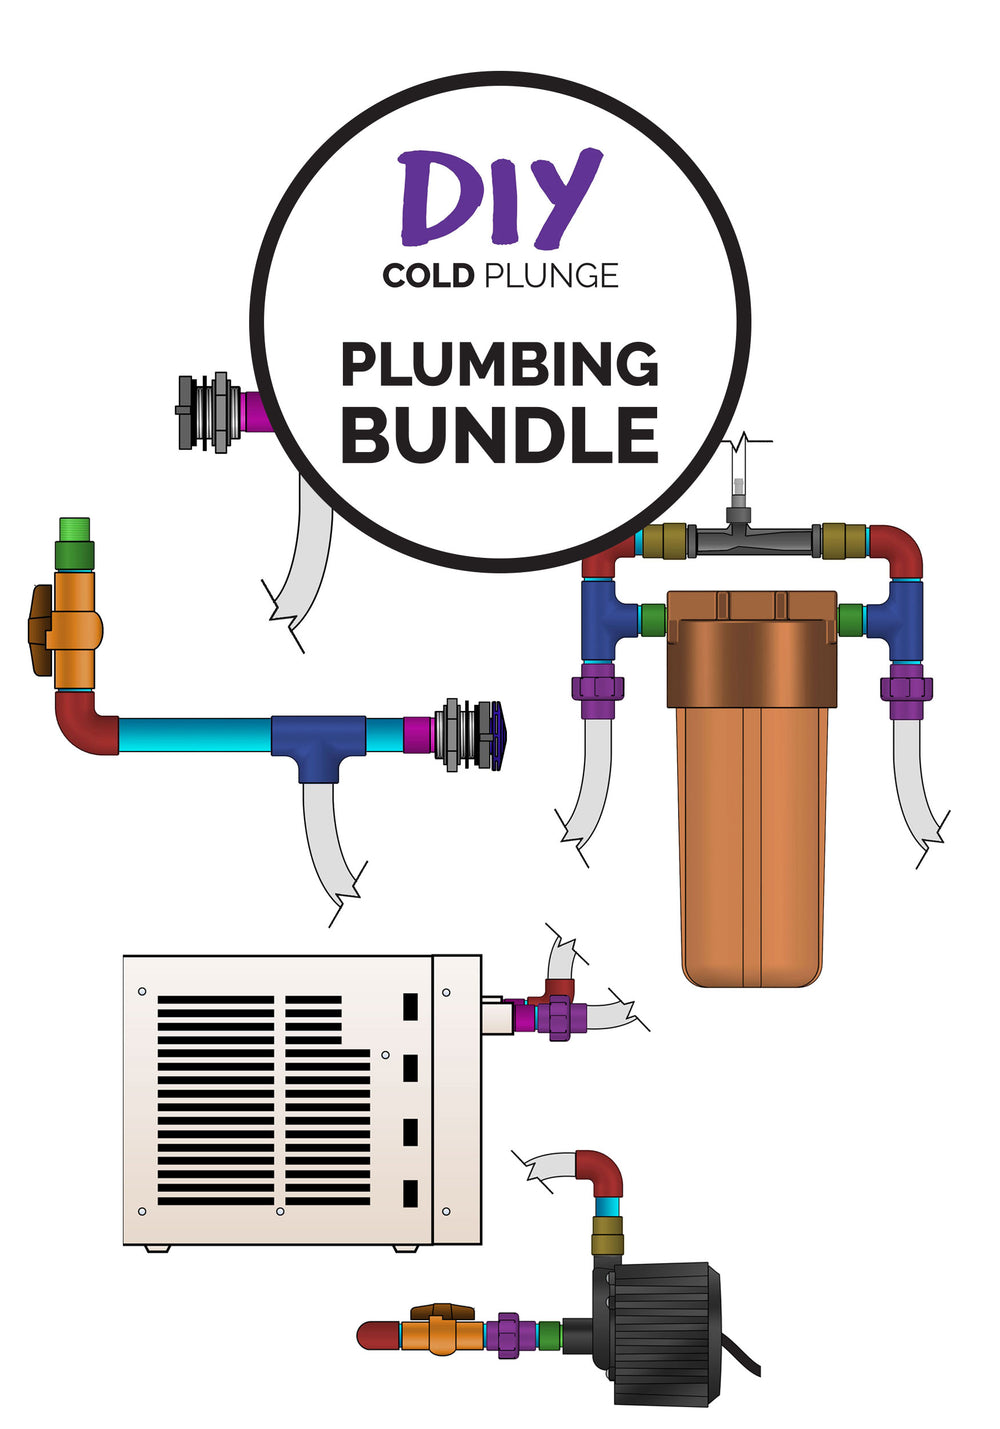 DIY Cold Plunge Plumbing Plan BUNDLE (PDF)